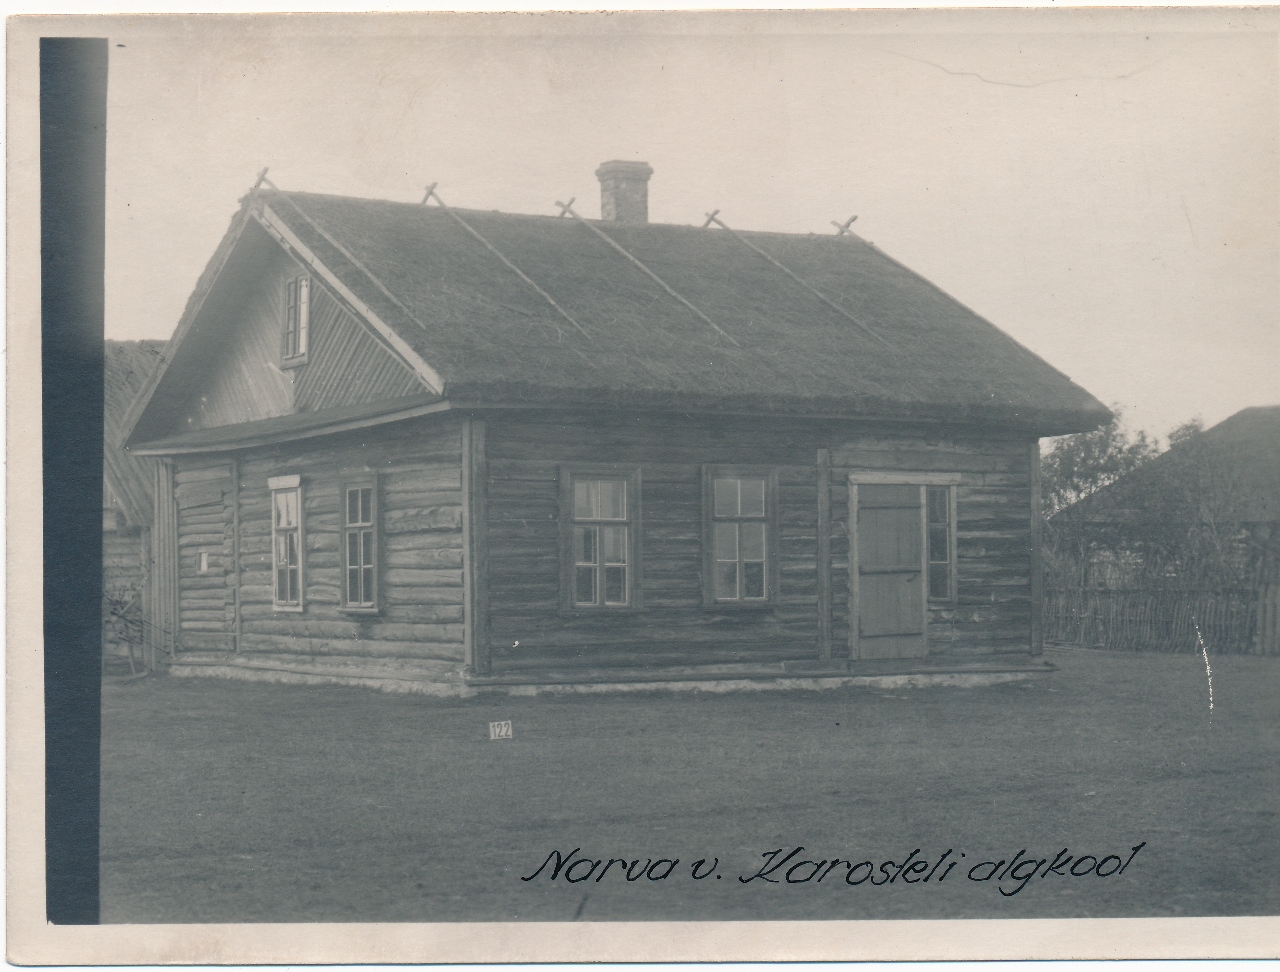 Karosteli algkool Narva vald